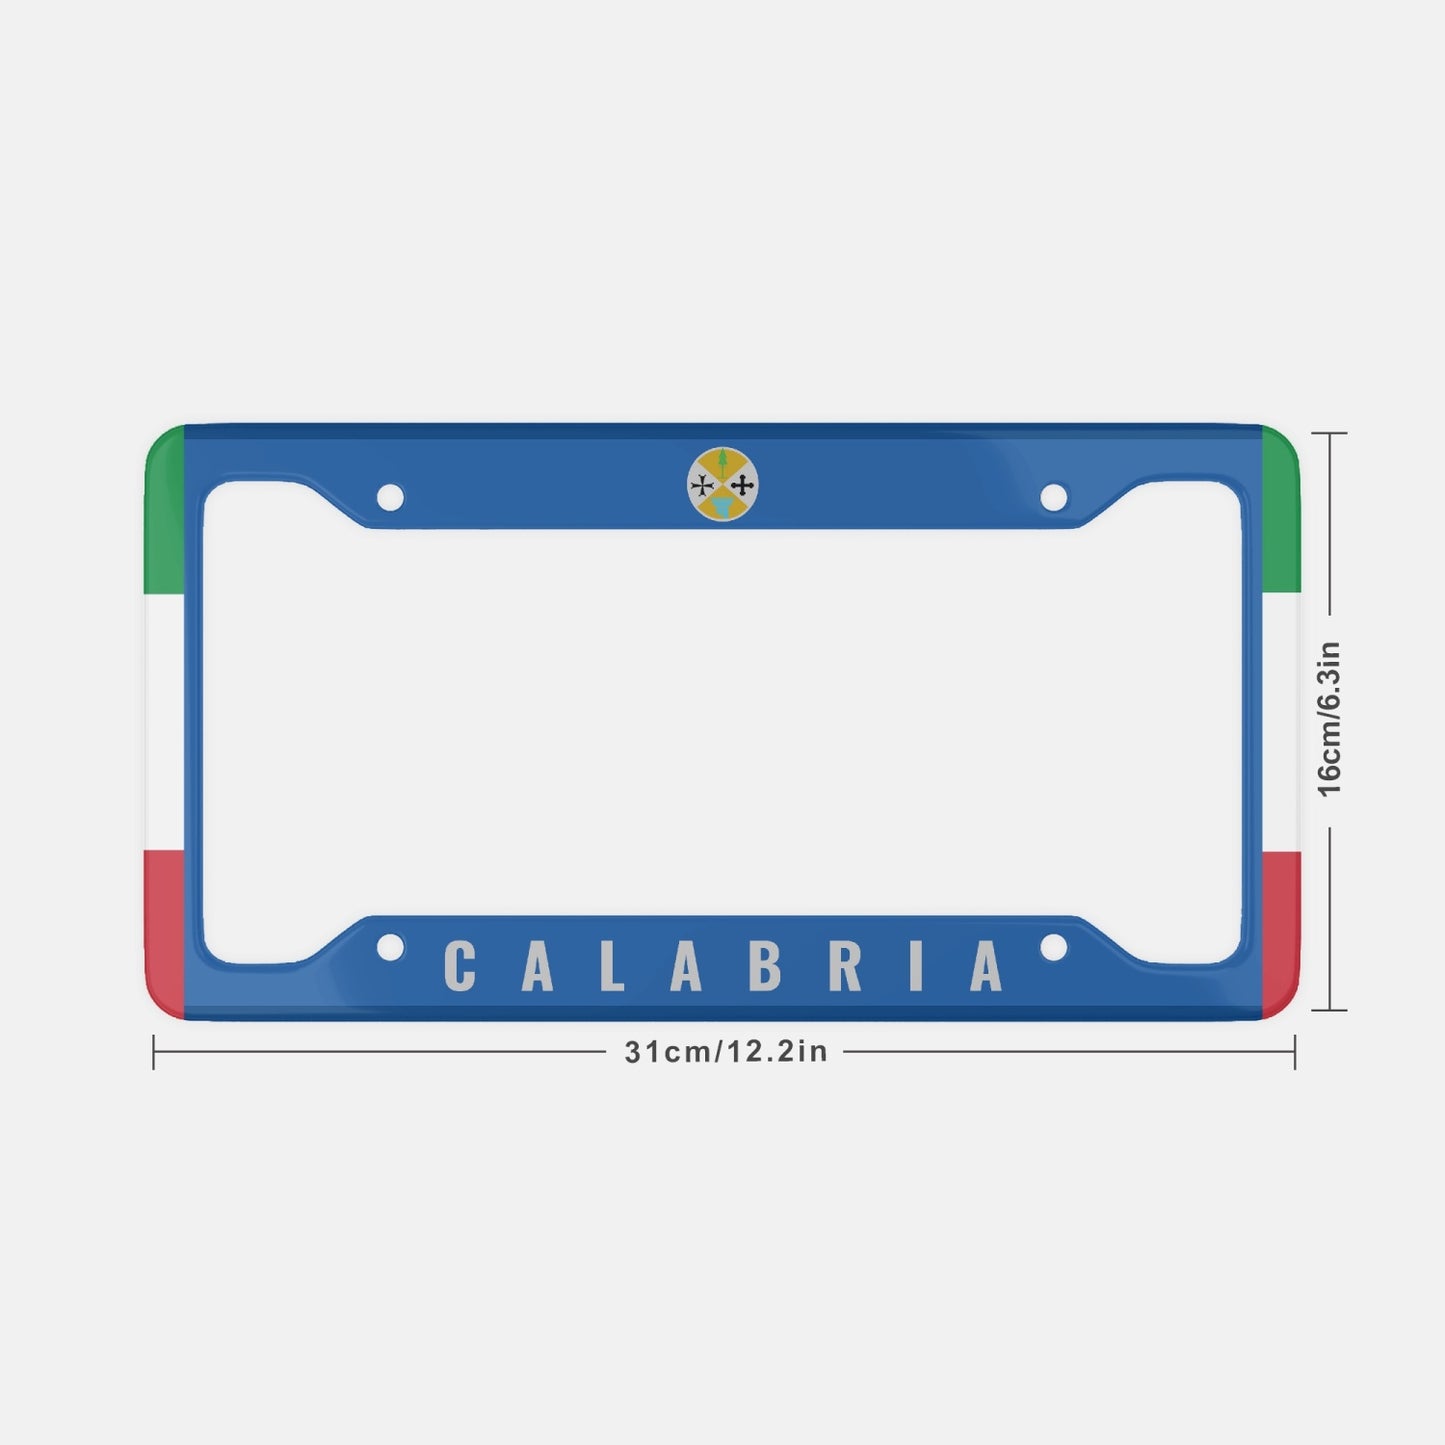 Calabria - License Plate Frame